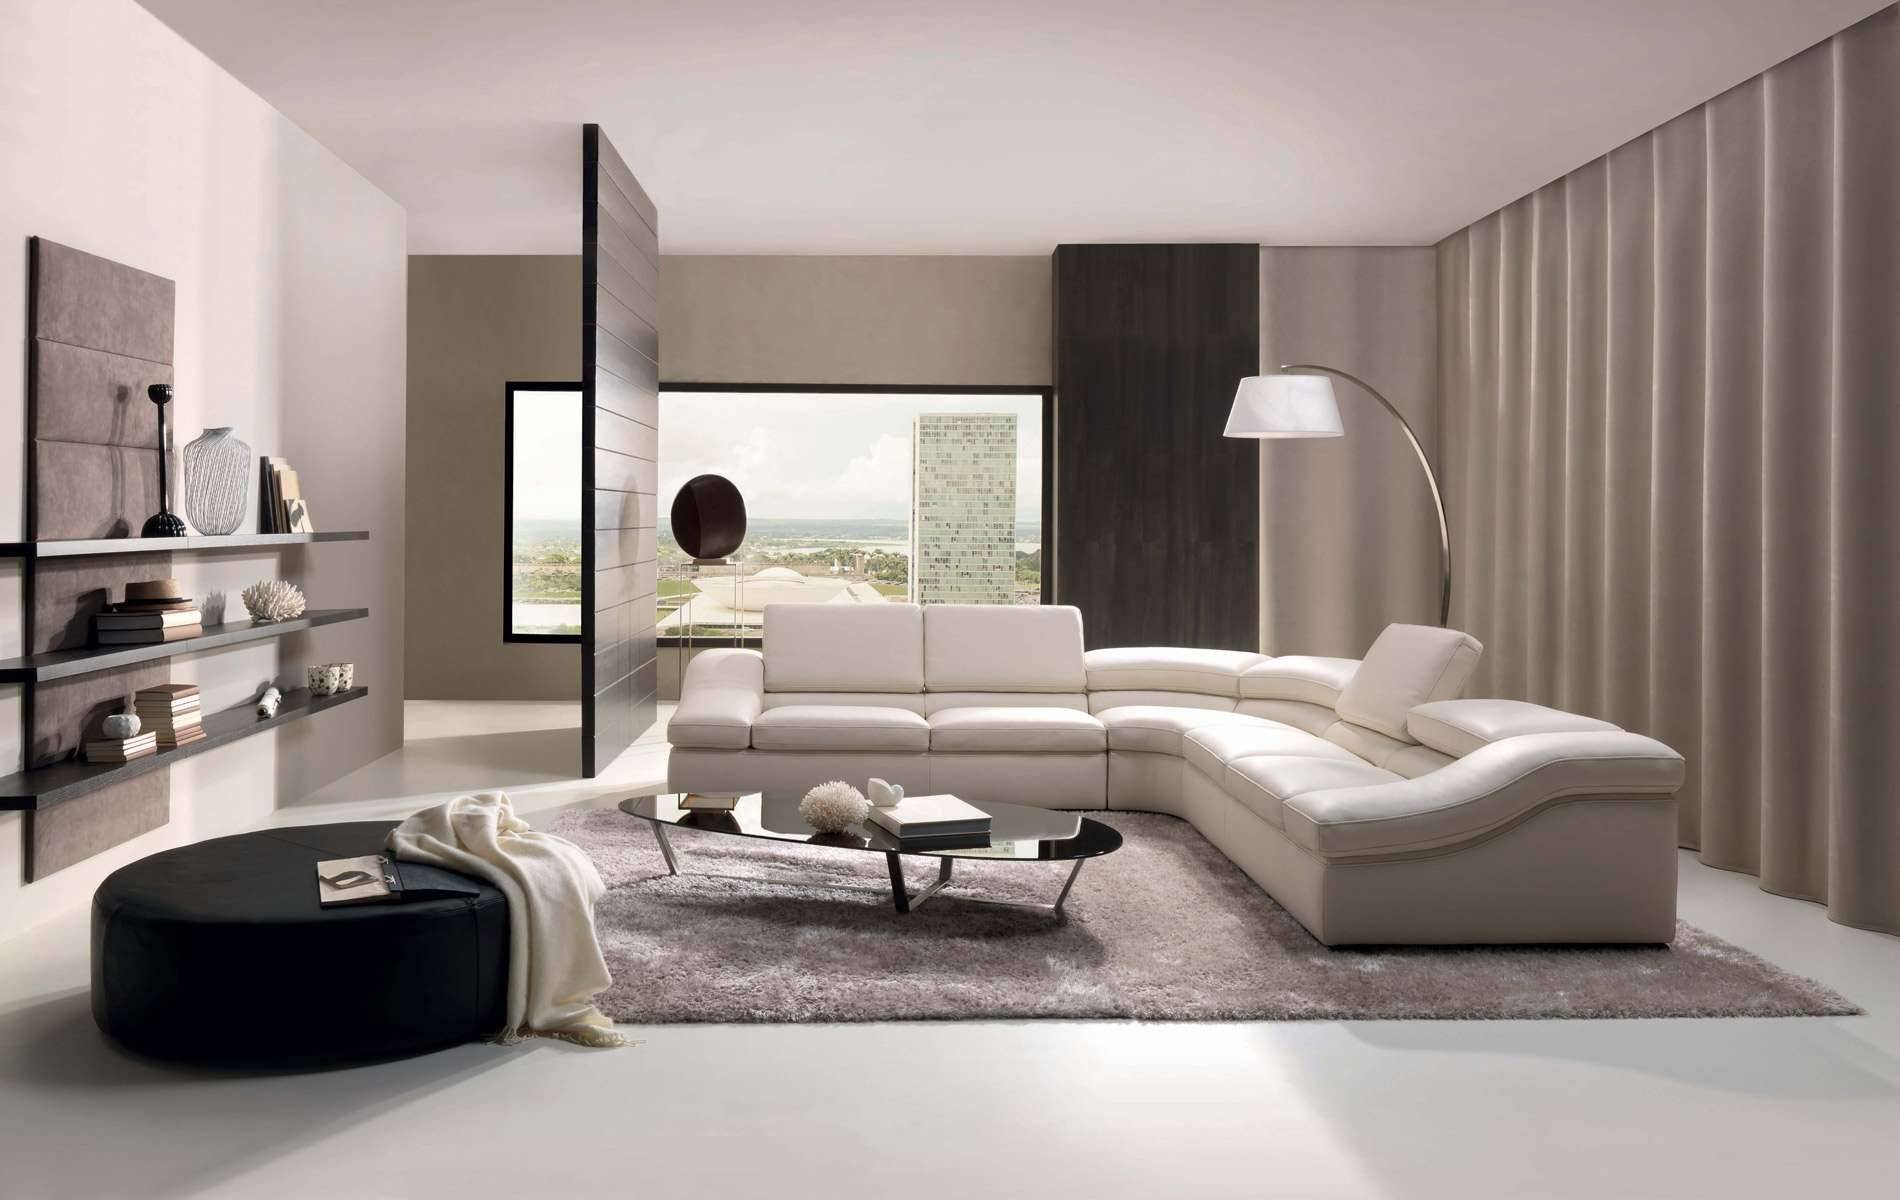 Особенности интерьера спальни в стиле модерн